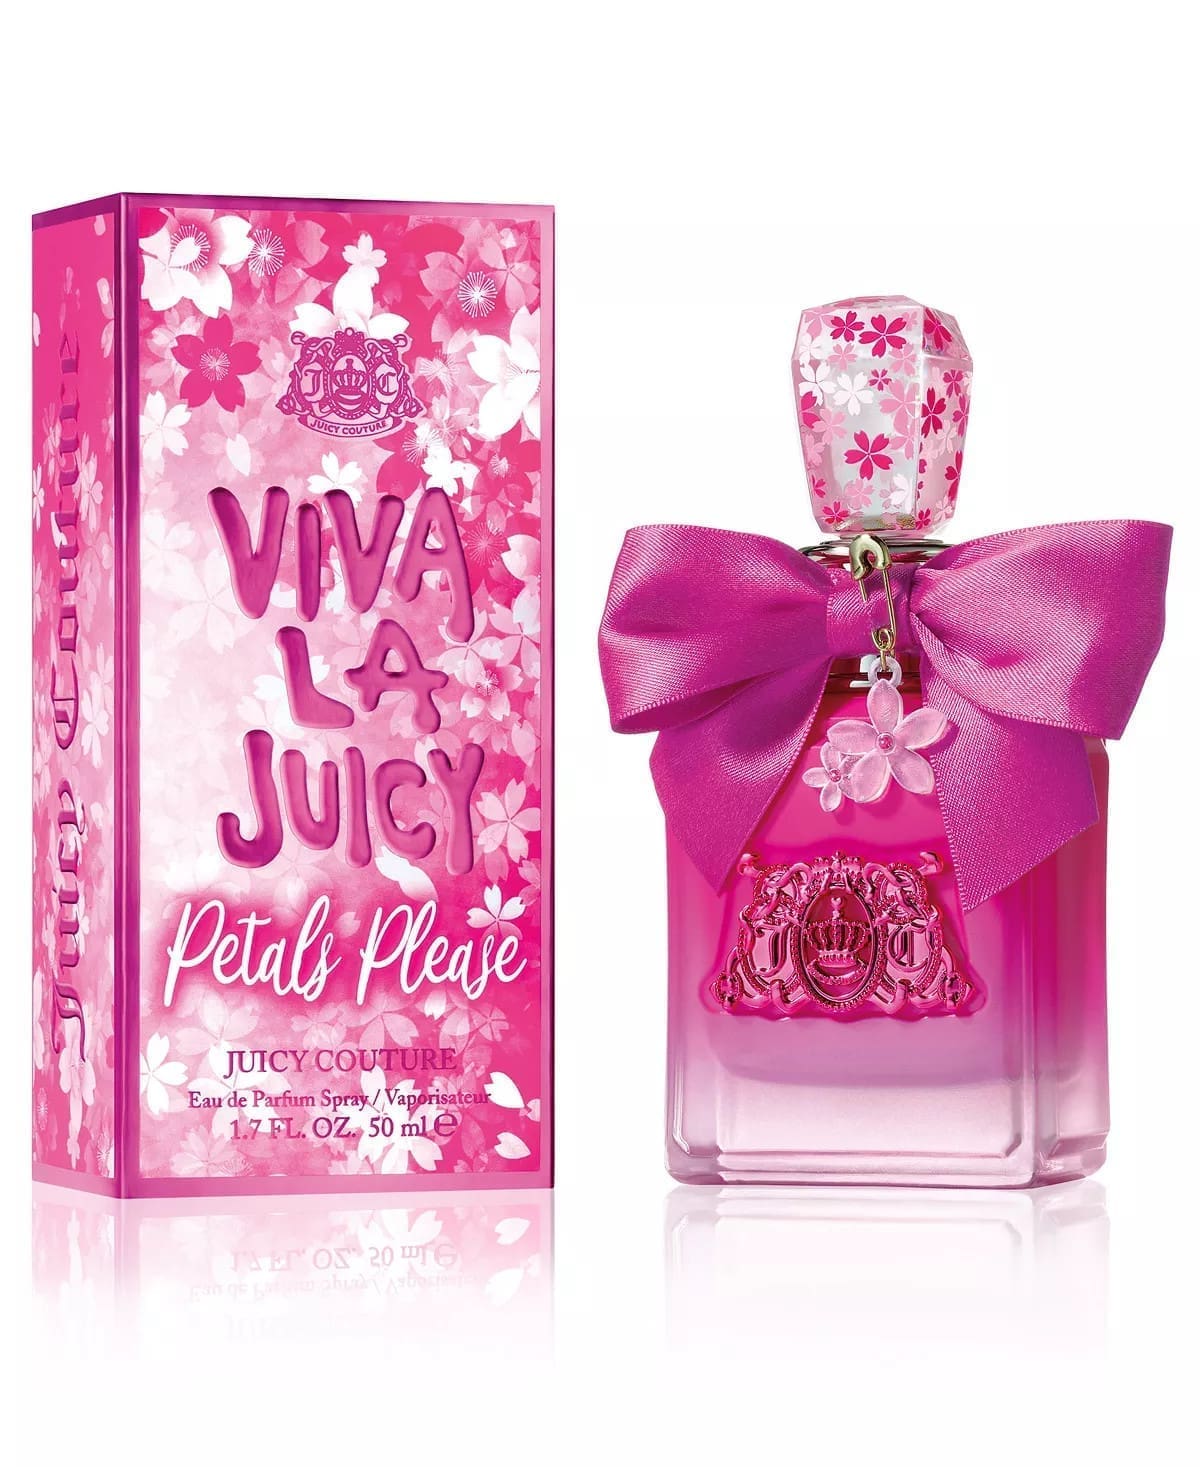 6451 Viva La Juicy Petals Please Juicy Couture edp 100 ml Original